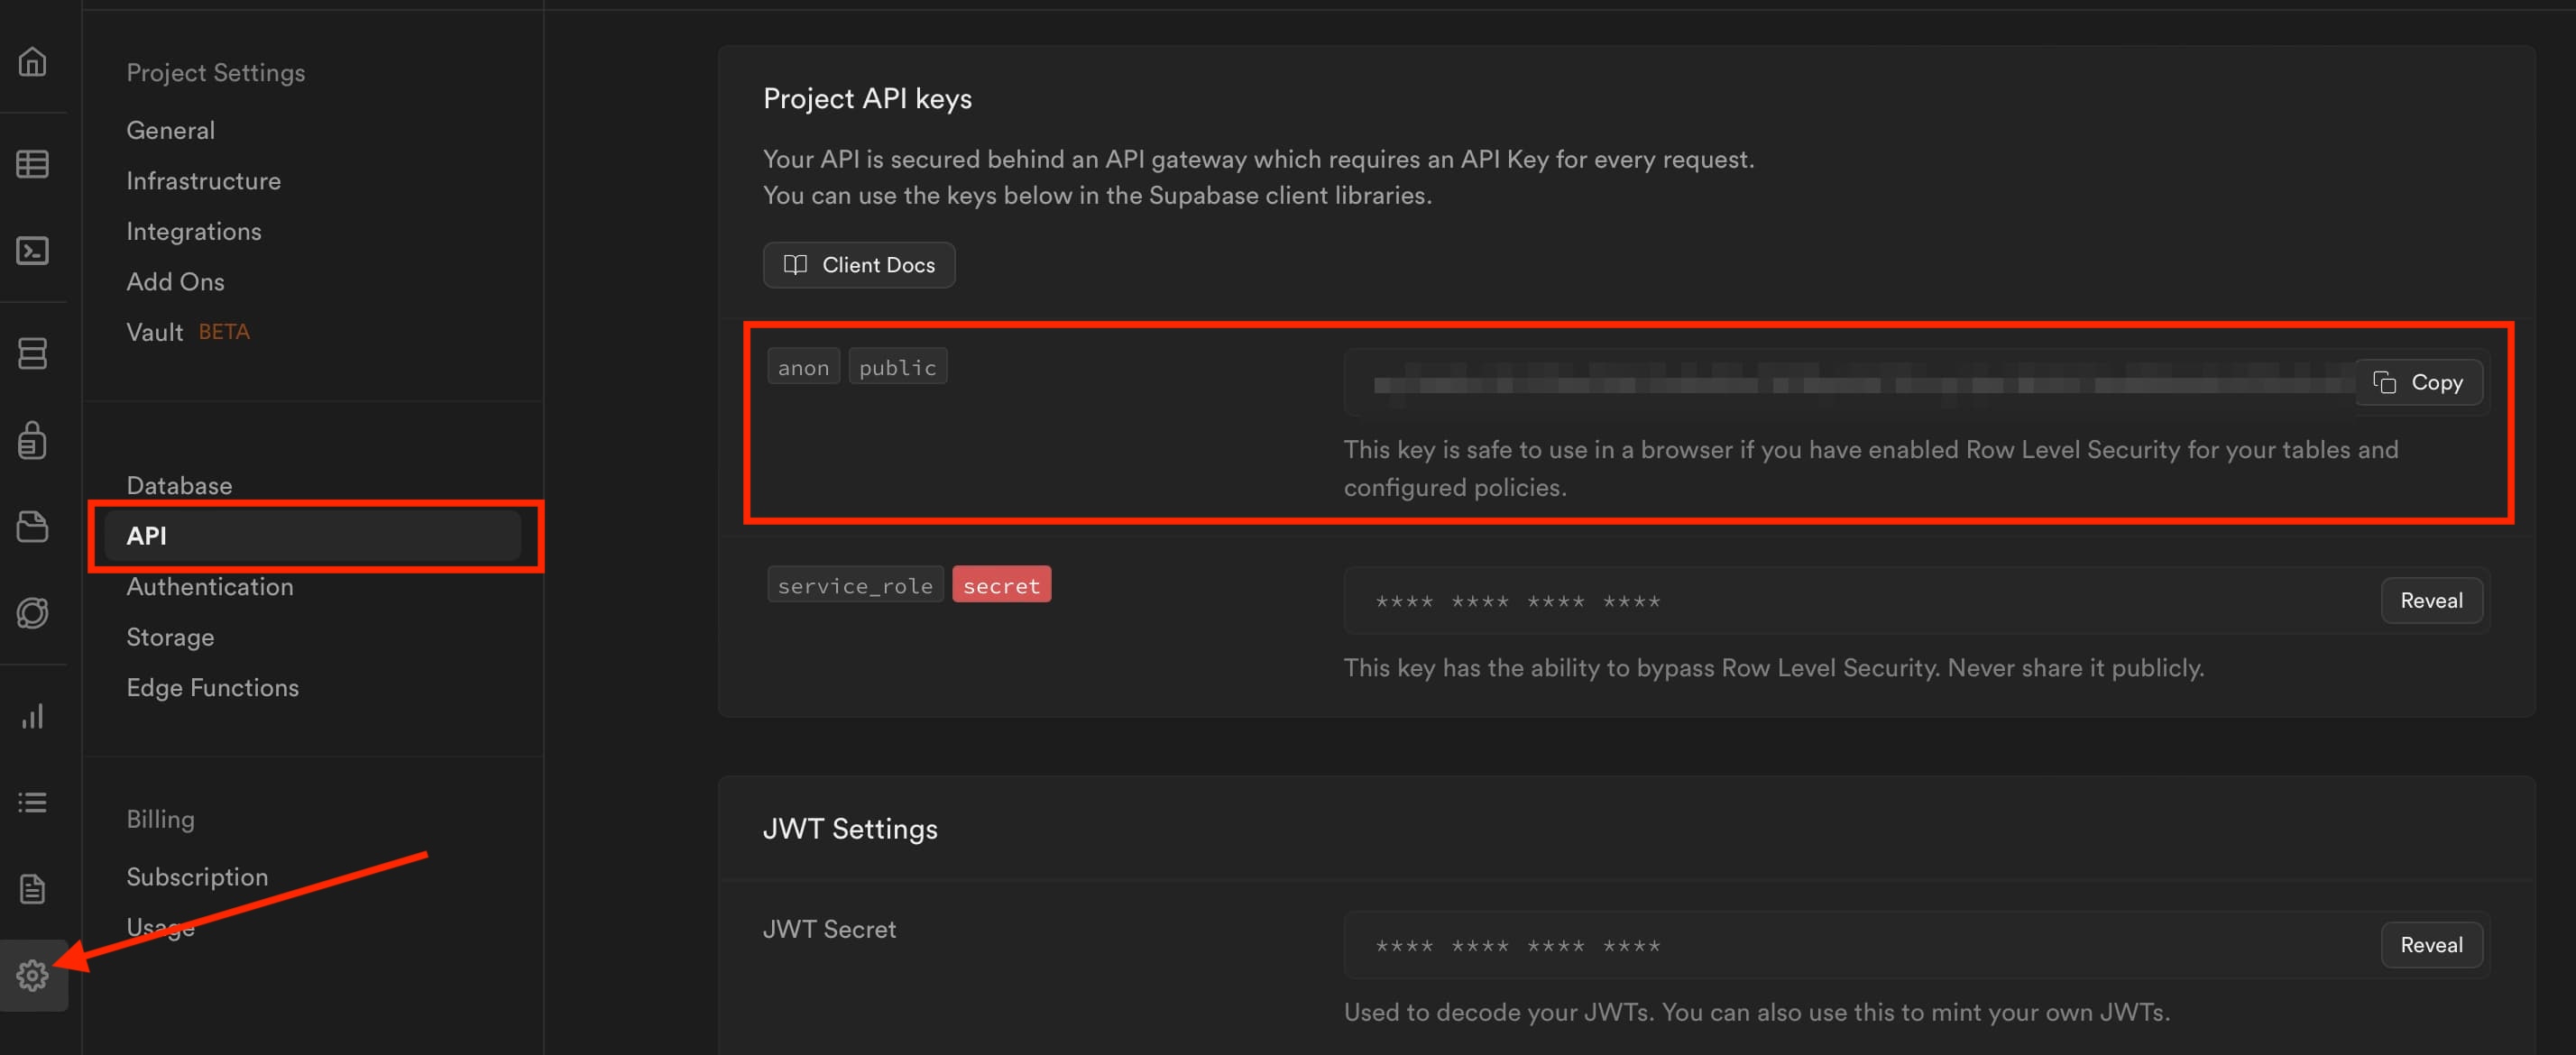 Supabaseのプロジェクトの設定画面のProject API keysのanon publicキー